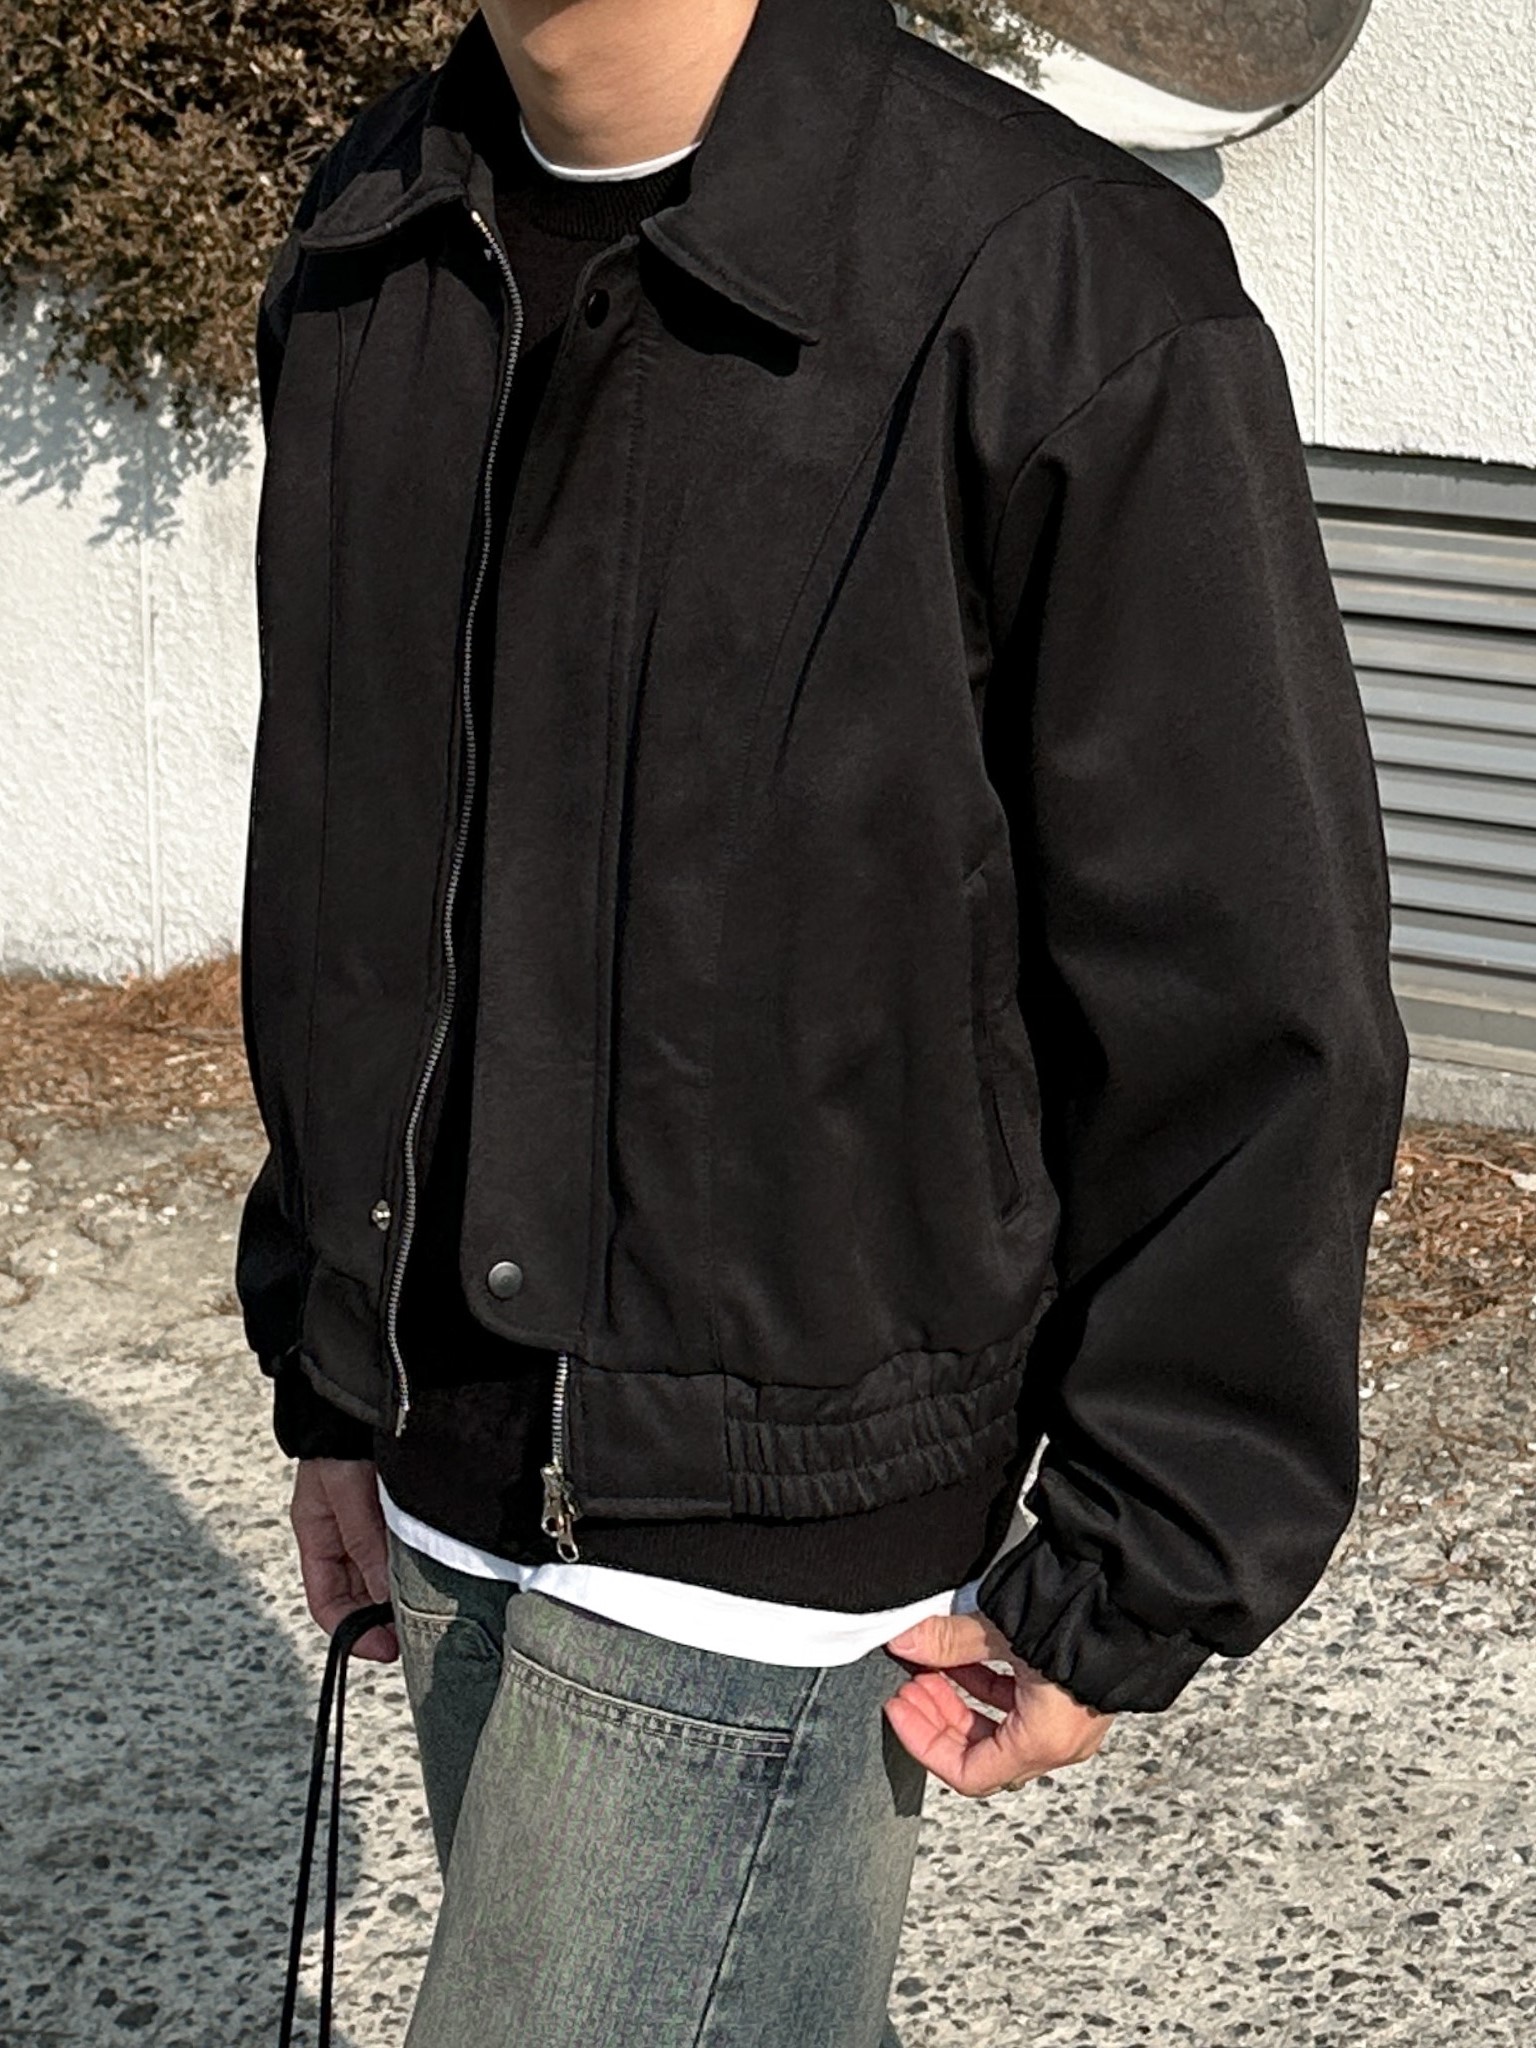 poise blouson jacket (3color)